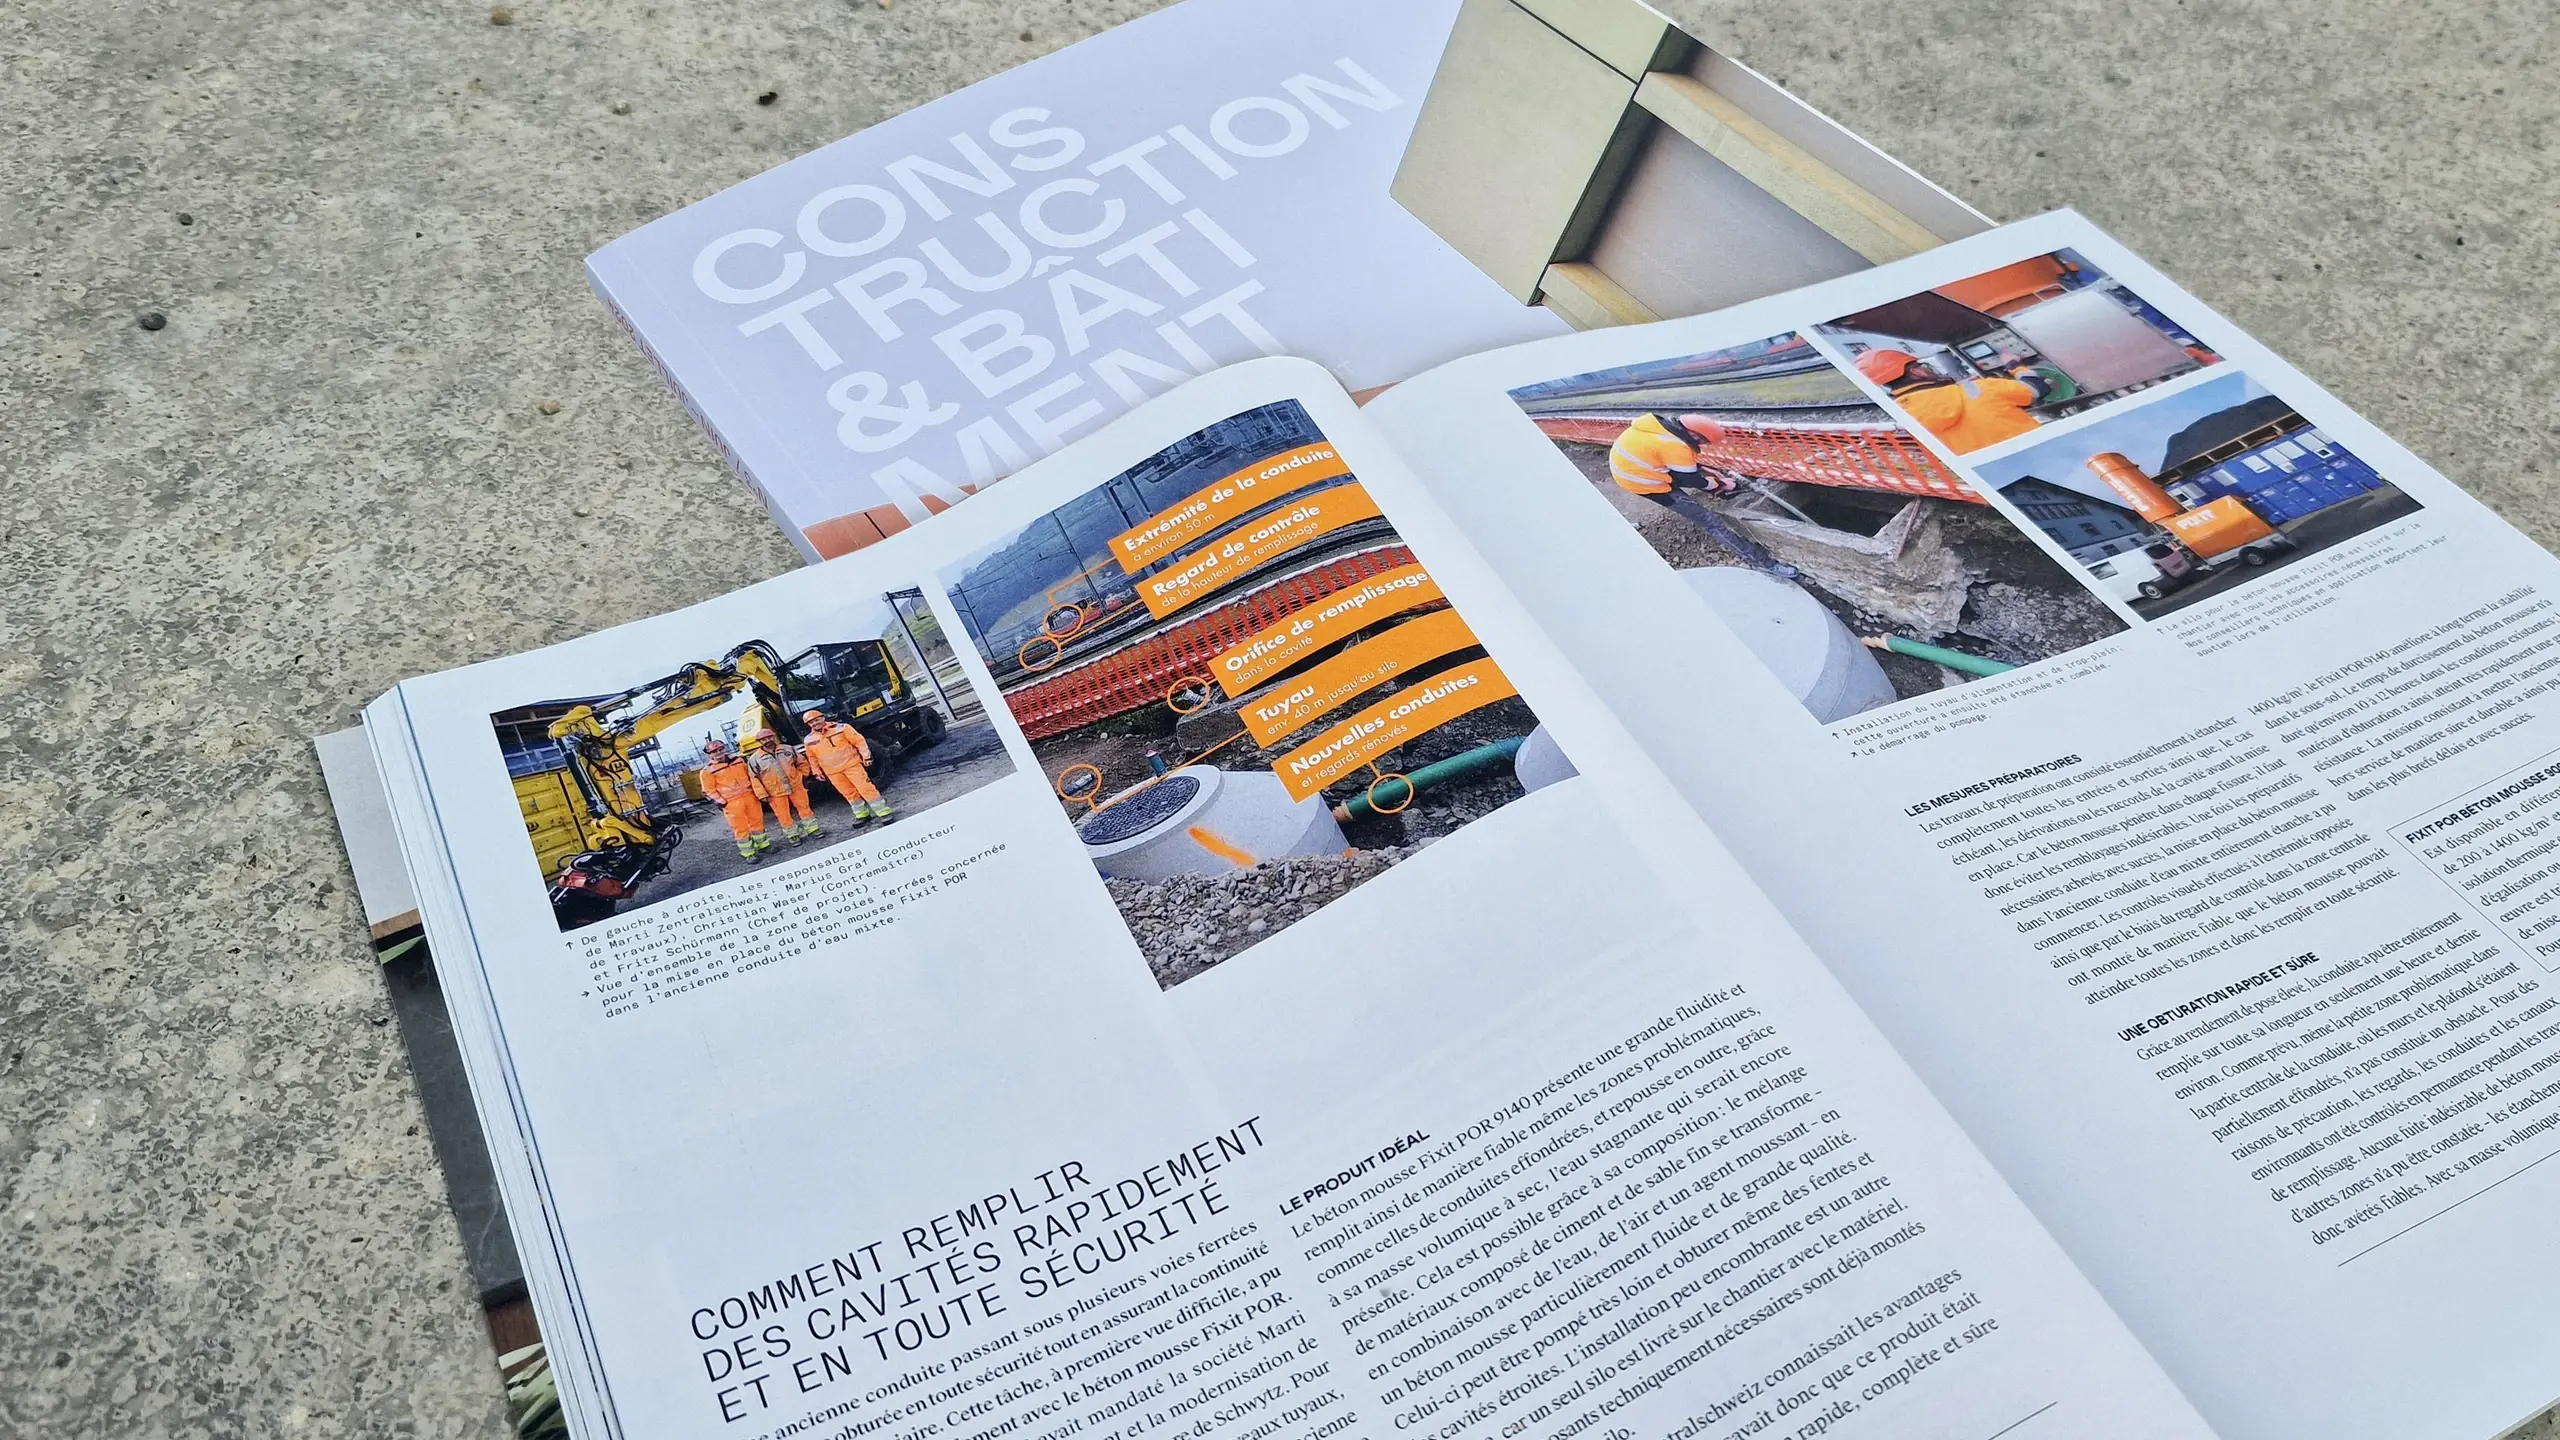 Titelblatt des Magazins "Construction Bâtiment" mit dem aufgeschlagenen Artikel zur Fixit POR Leitungsverfüllung am Bahnhof Schwyz